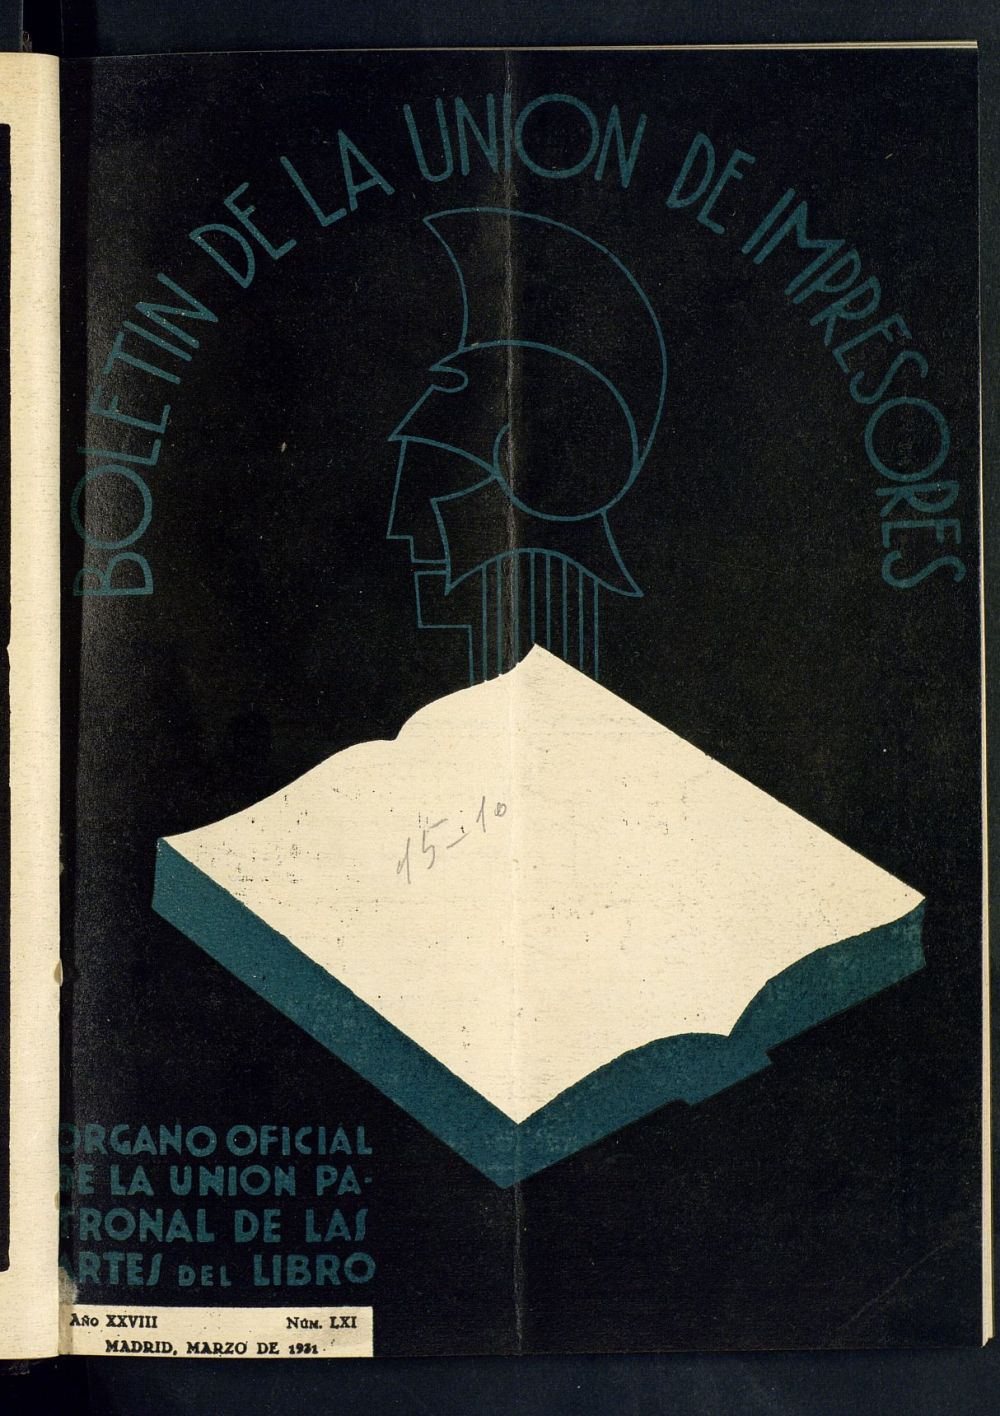 Boletn de la unin de impresores : rgano de la unin patronal de las artes del libro de marzo de 1931